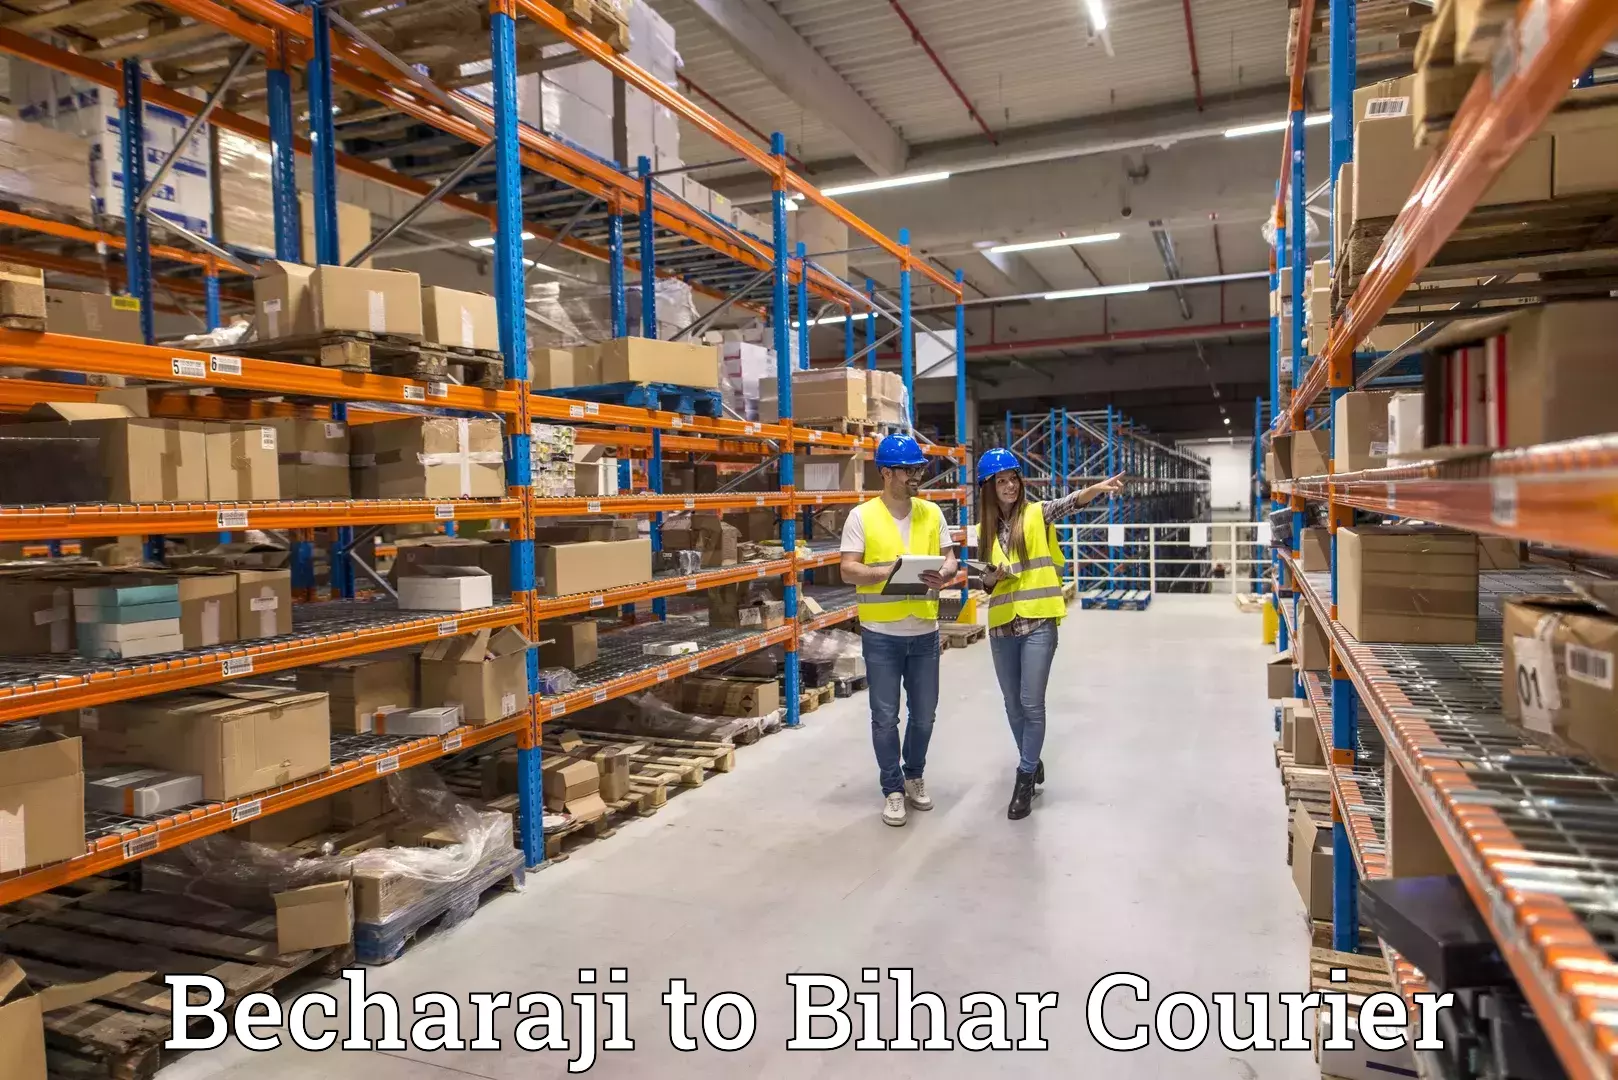 Customer-centric shipping Becharaji to Bihar